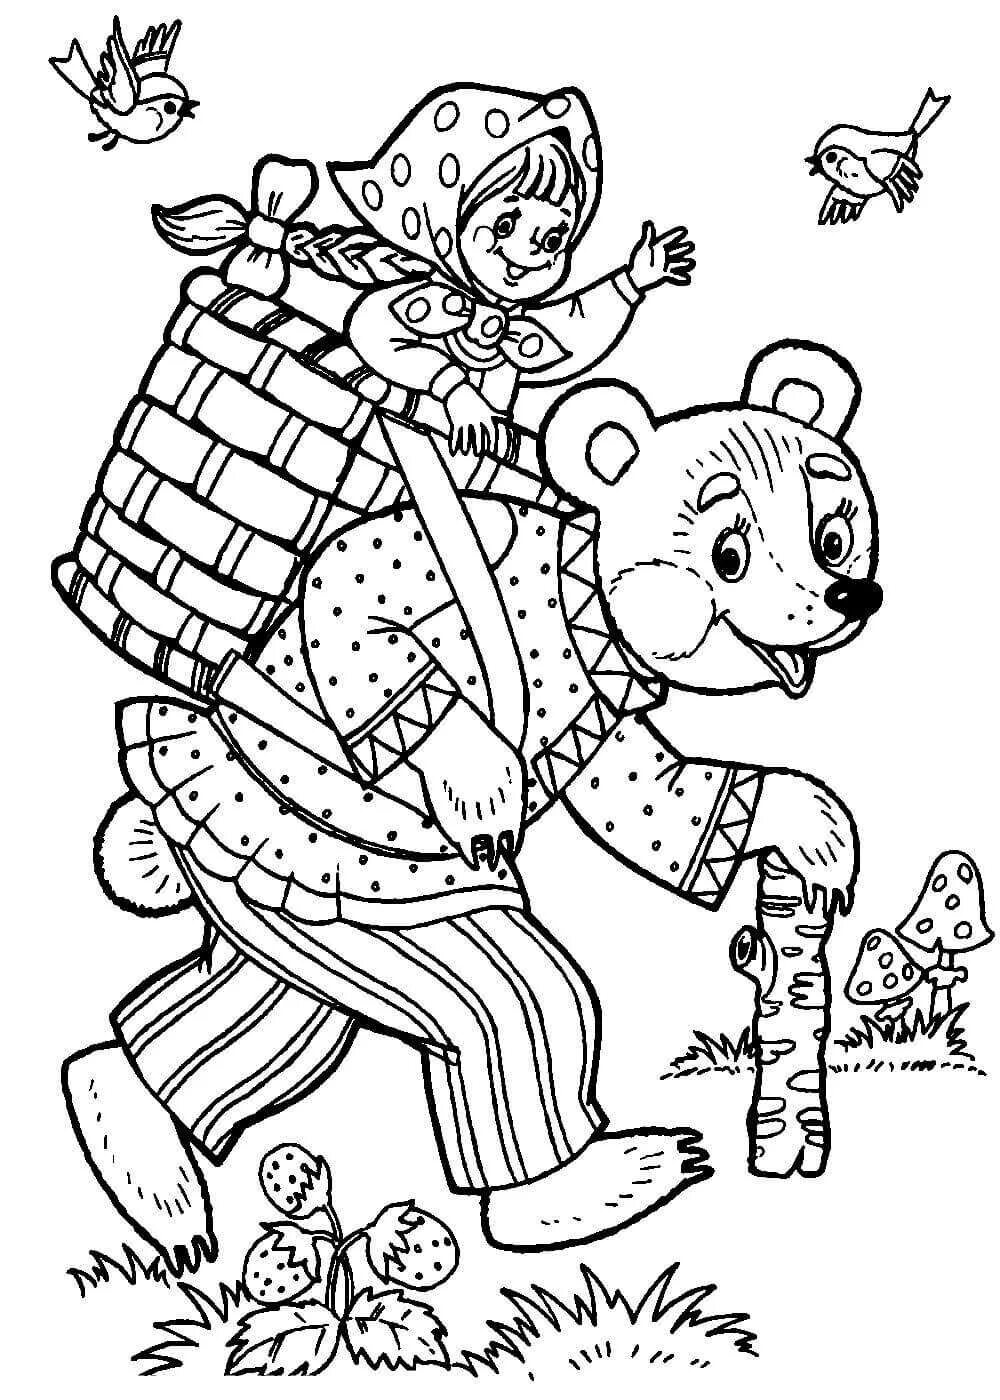 Сказка Маша и медведь раскраска для малышей. Маша и медведь сказка raskraska. Маша из сказки Маша и медведь раскраска для детей. Раскраски для детей из русских народных сказок. Картинки из сказок раскраски